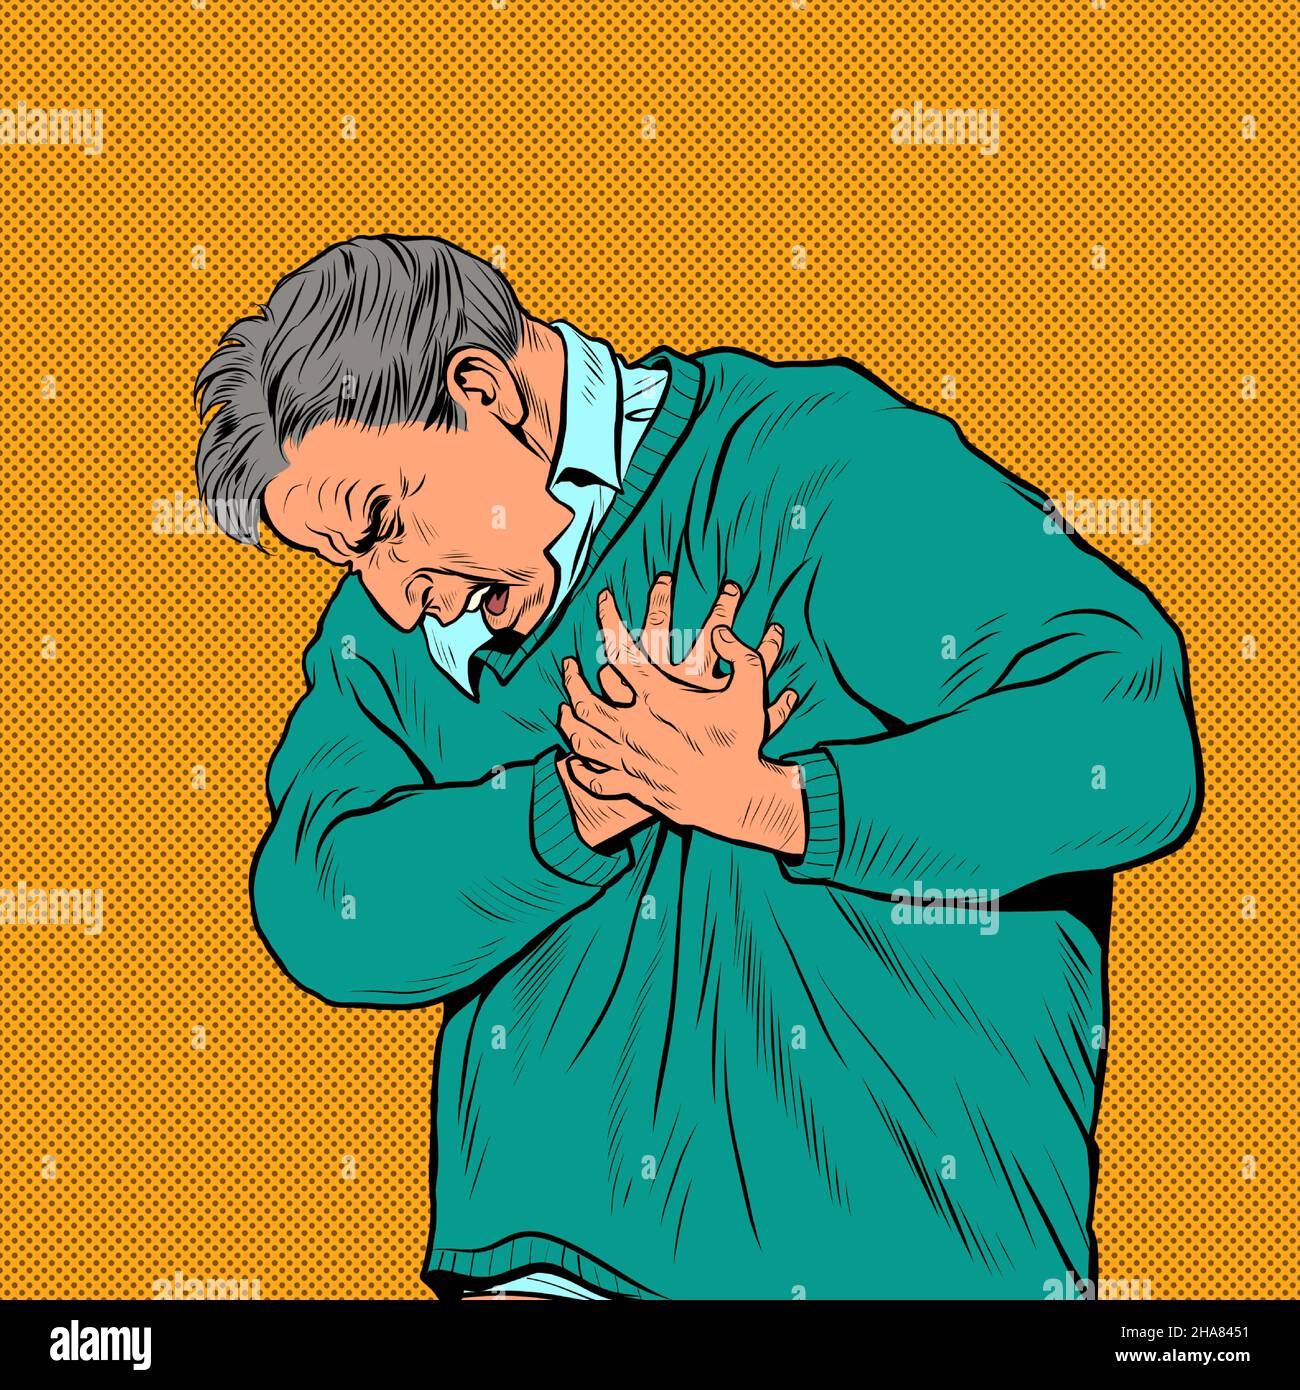 Ein älterer Mann Herzschmerzen, Myokardinfarkt hypertensive Krise Arrhythie und andere Erkrankungen der Kardiologie Stock Vektor